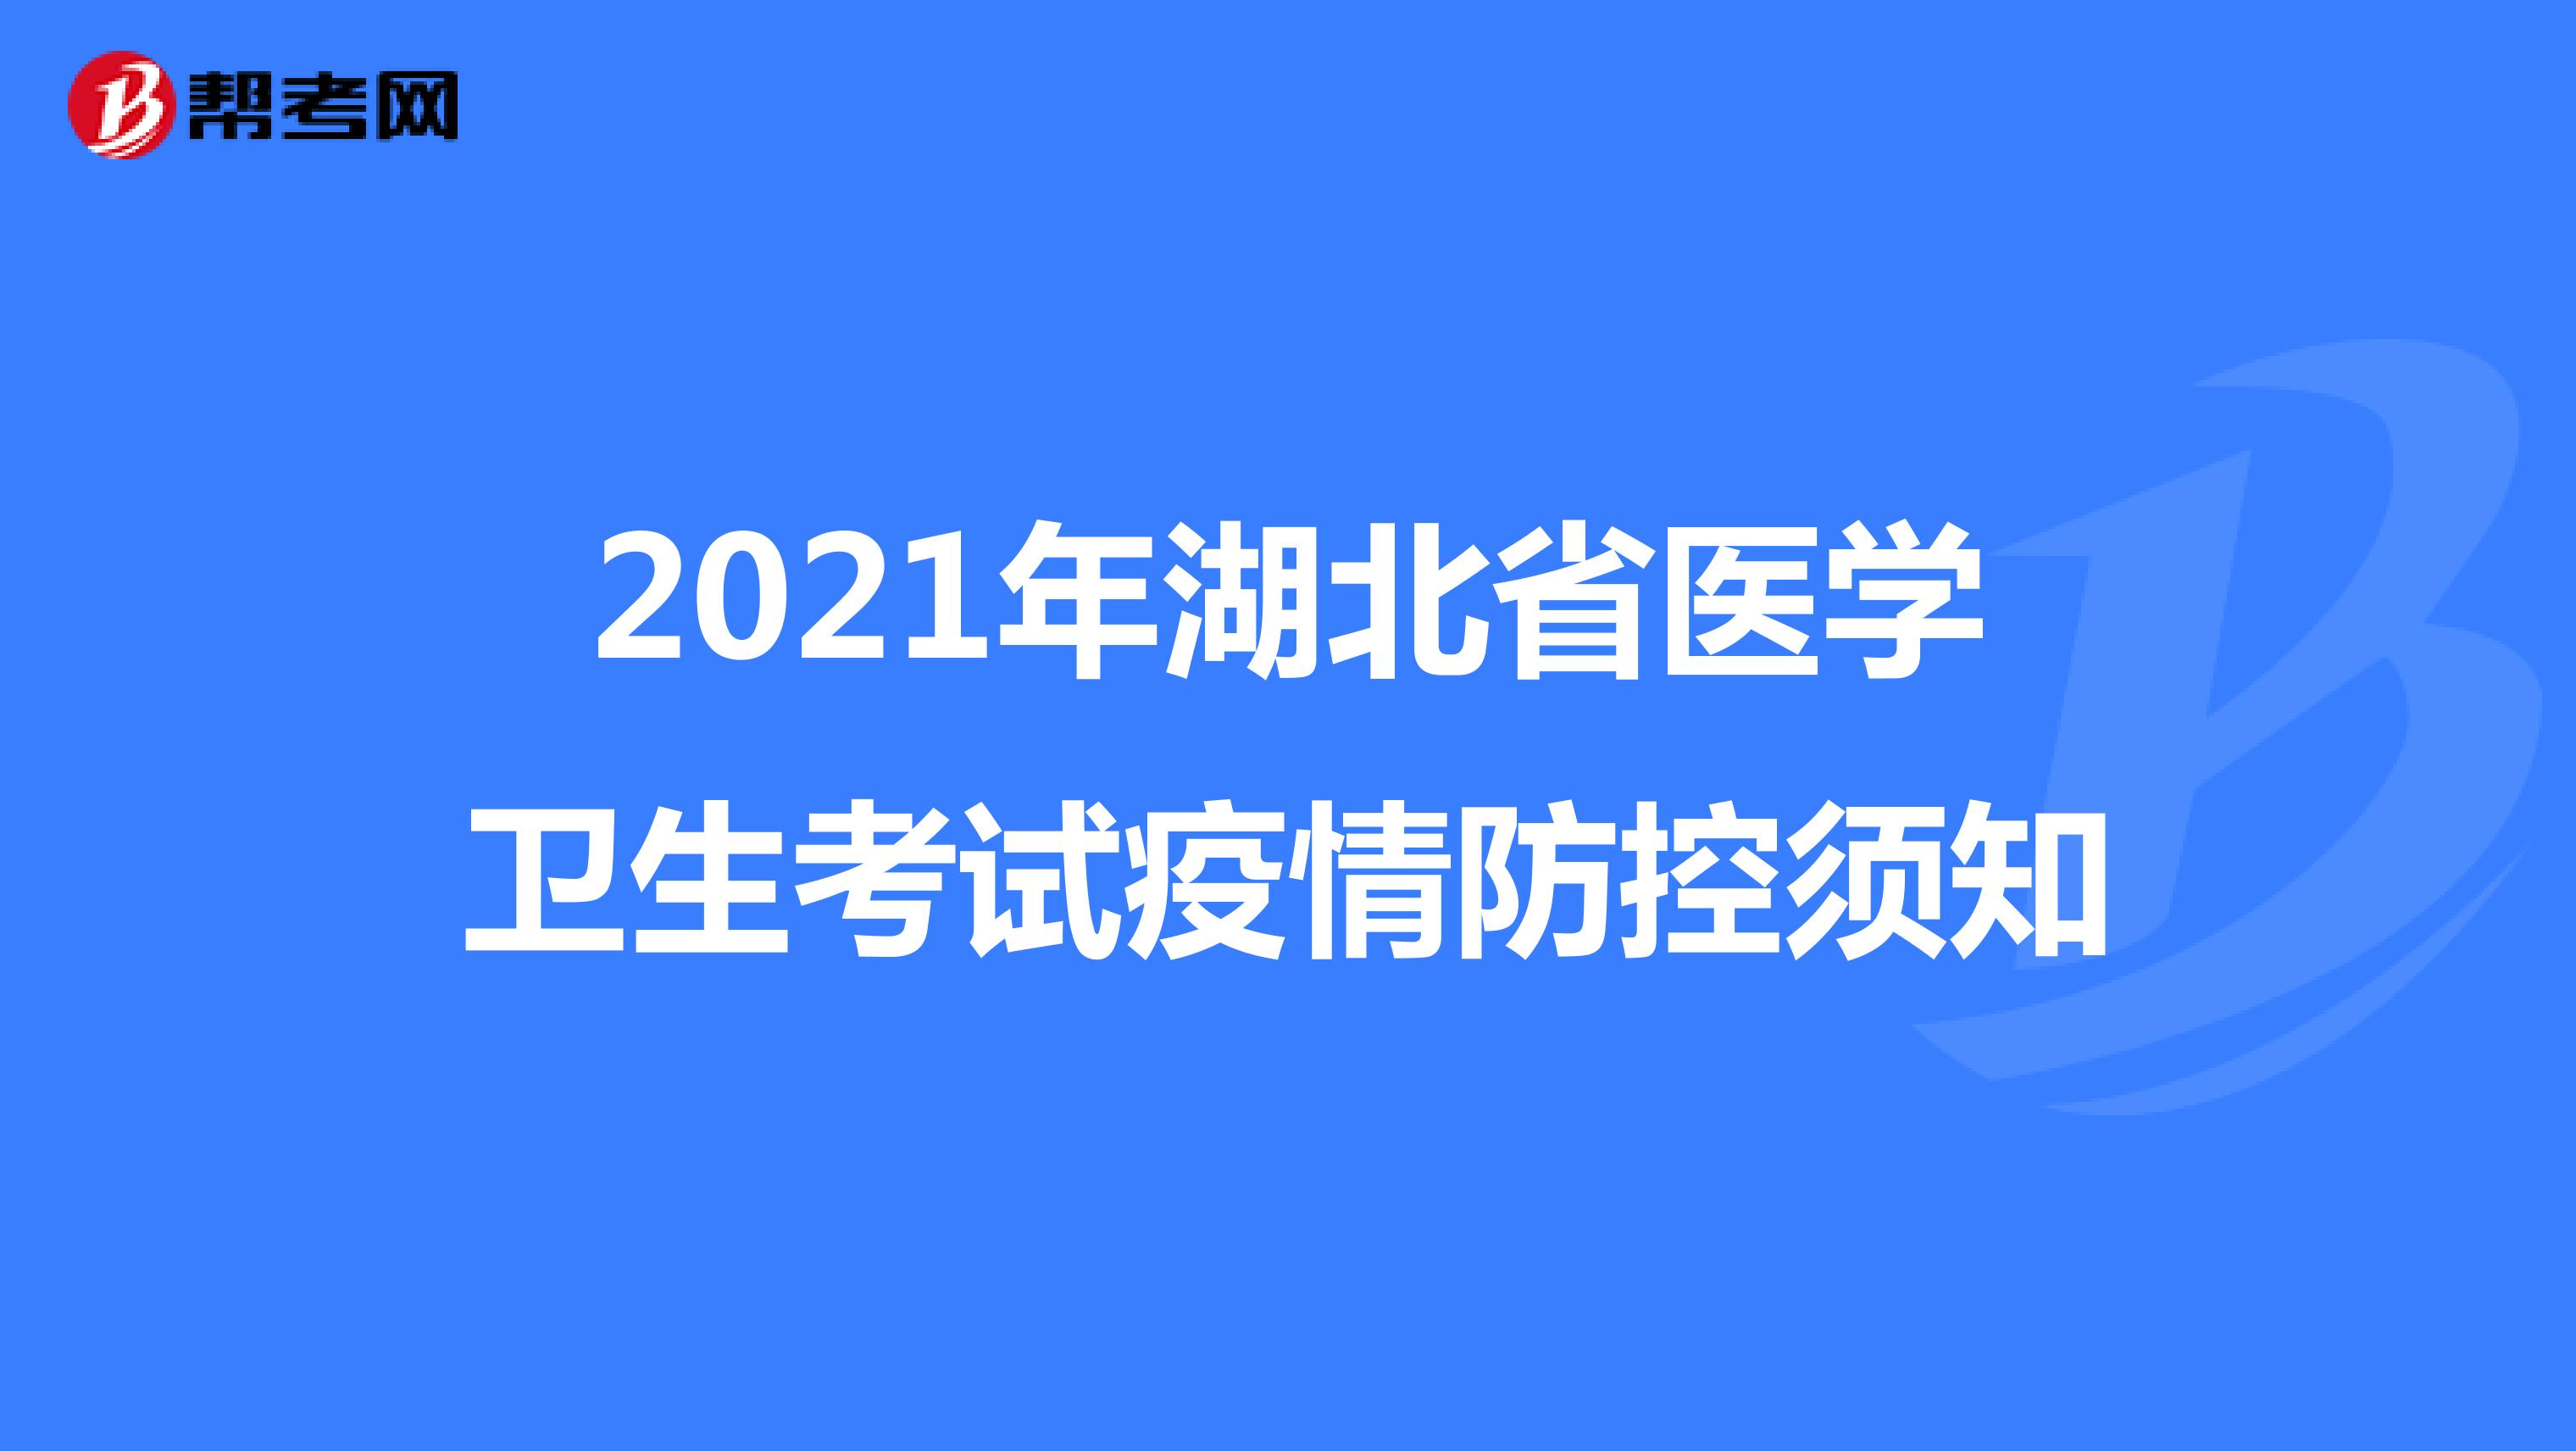 2021年湖北省医学卫生考试疫情防控须知